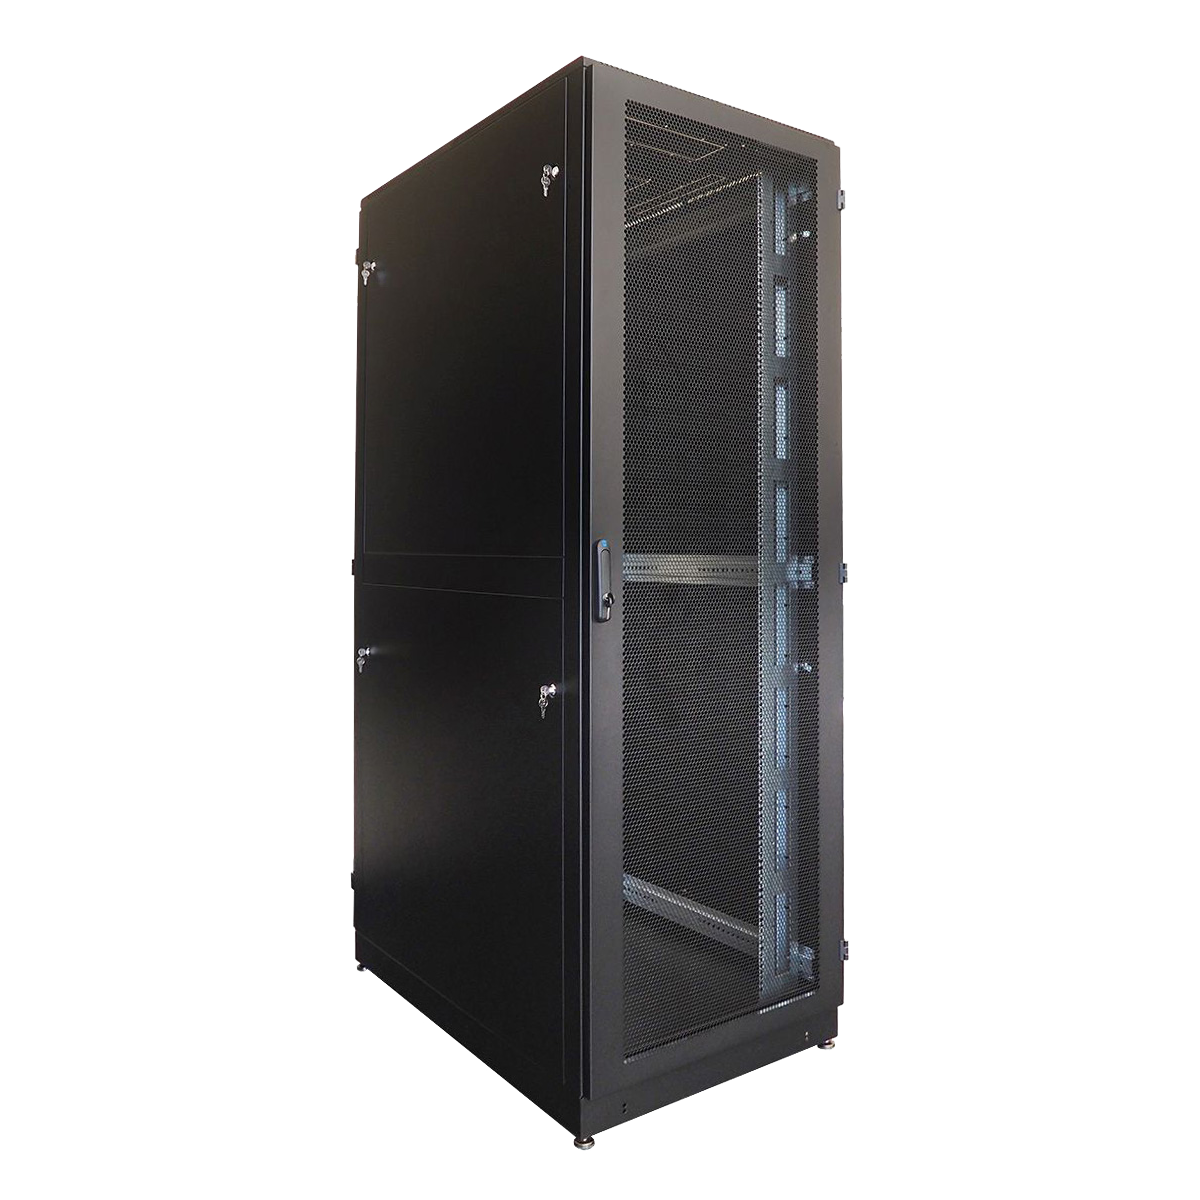 Шкаф серверный напольный 42U (800x1200) дверь перфорированная, задние двойные перфорированные, цвет черныйШТК-М-42.8.12-48АА-9005 фото